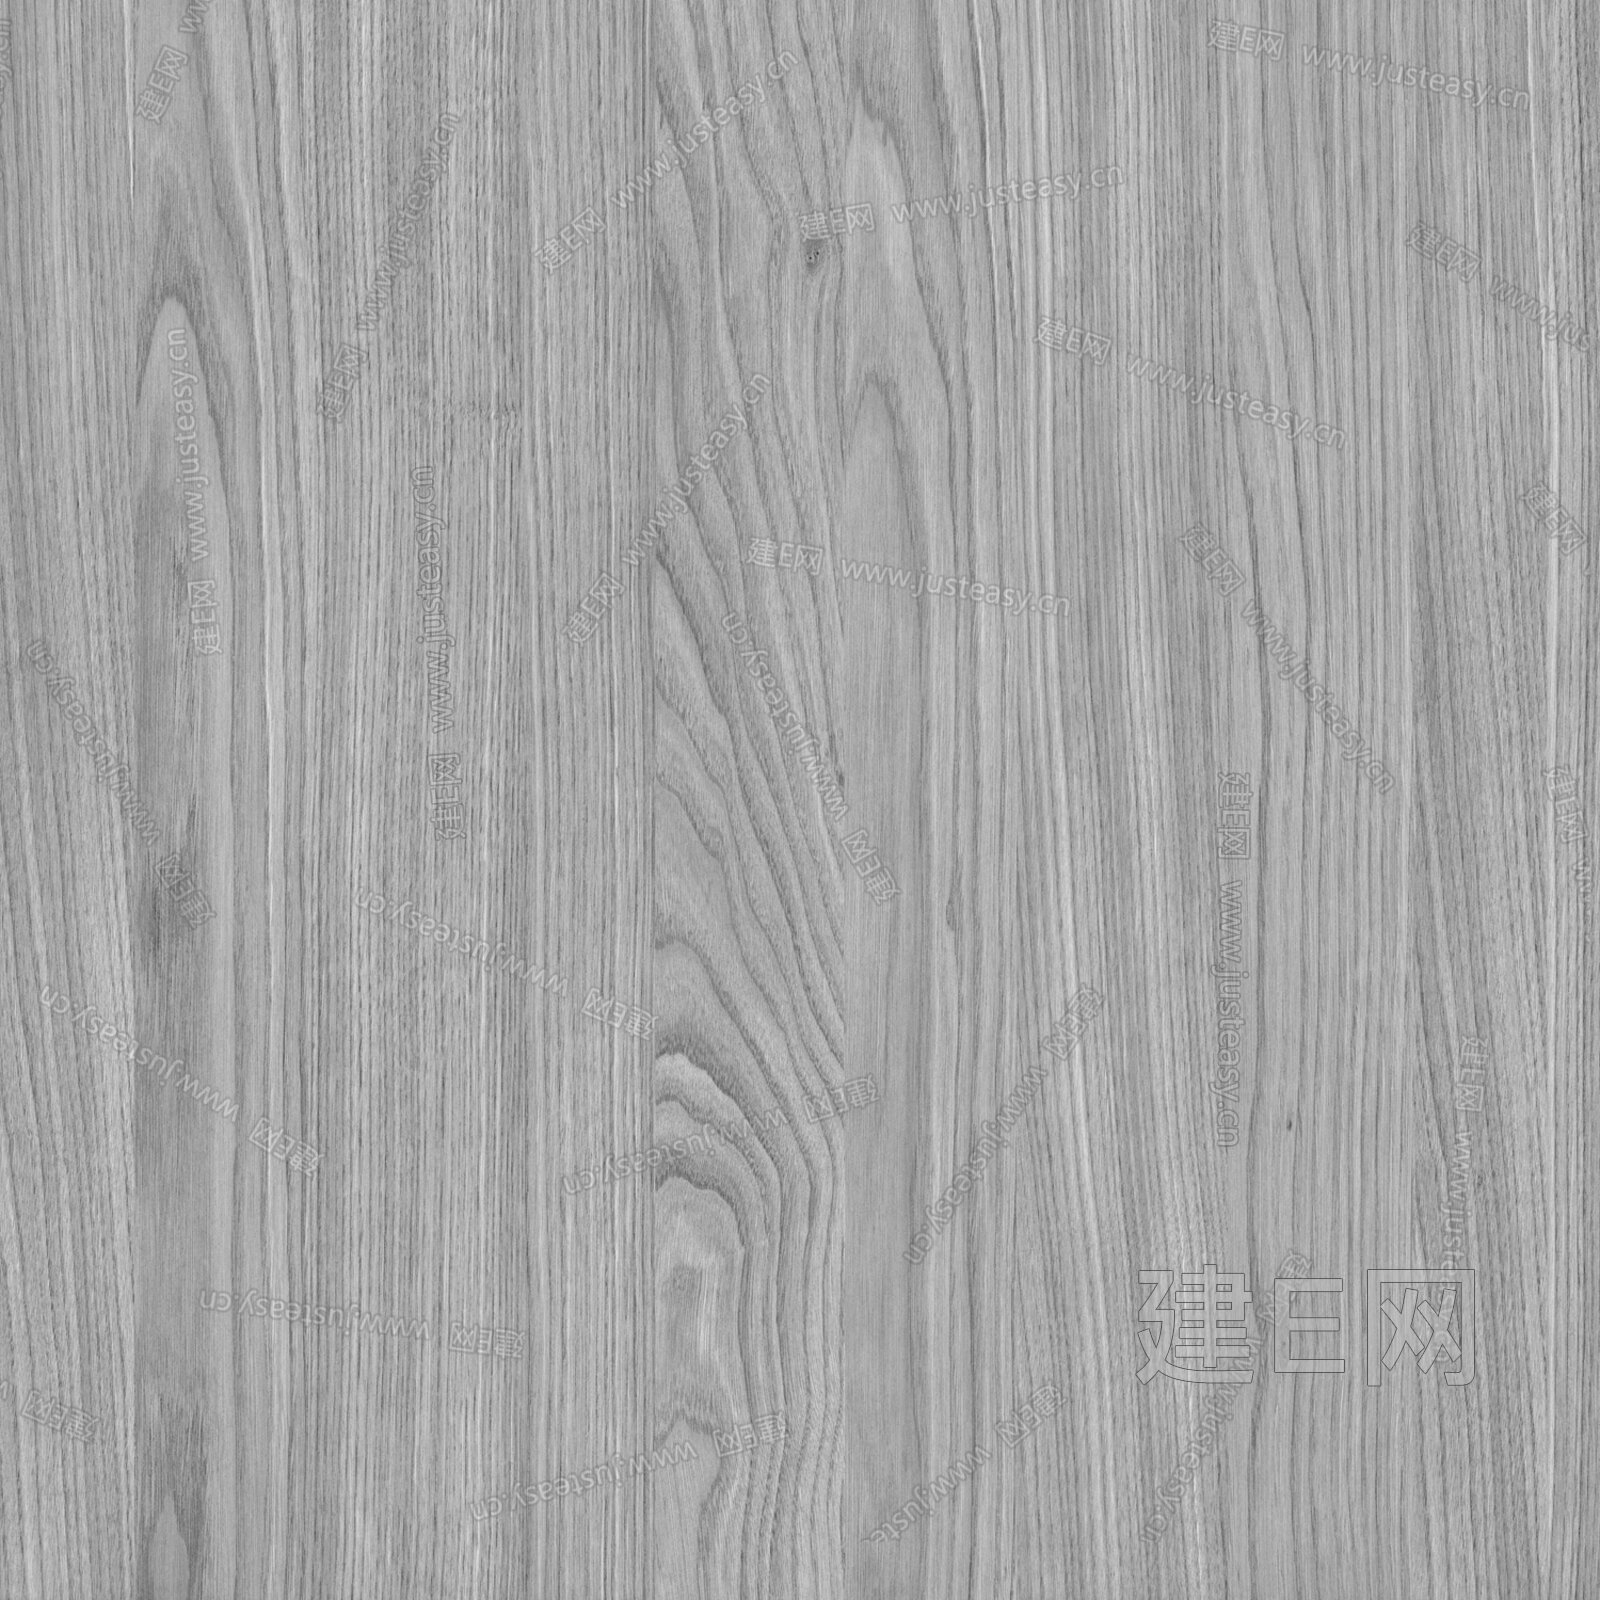 高贵典雅的天然木饰面板-建E网设计资讯-室内设计行业头条资讯新闻网站